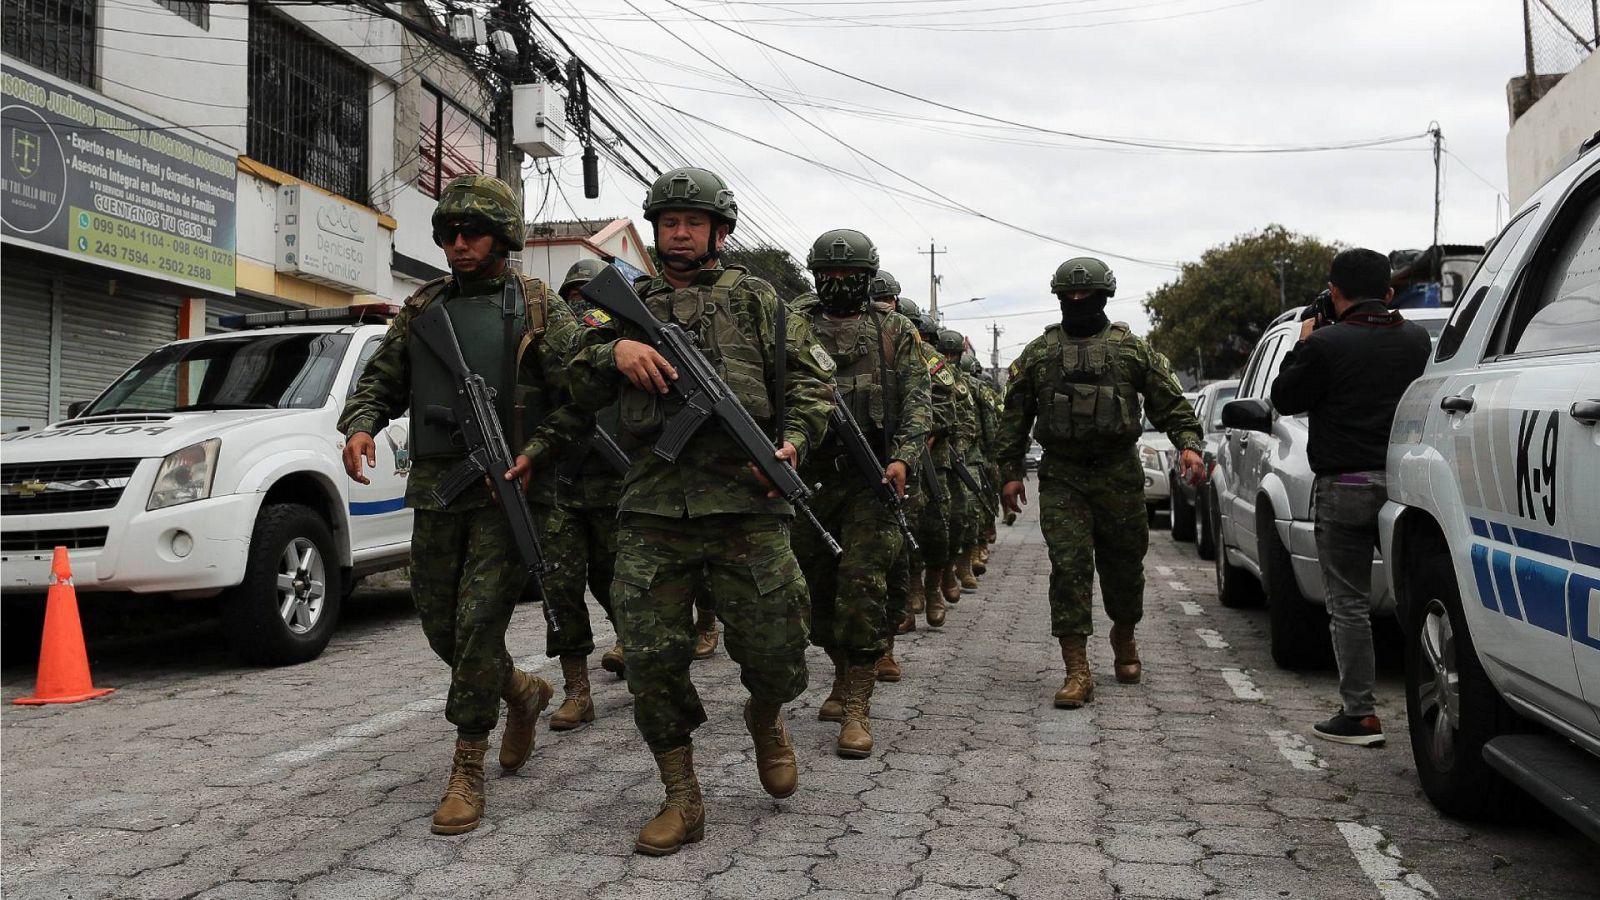 Ecuador implementa toque de queda de 6 horas! - Qué puede pasar en Ecuador tras la “muerte cruzada” ✈️ Foro América del Sur